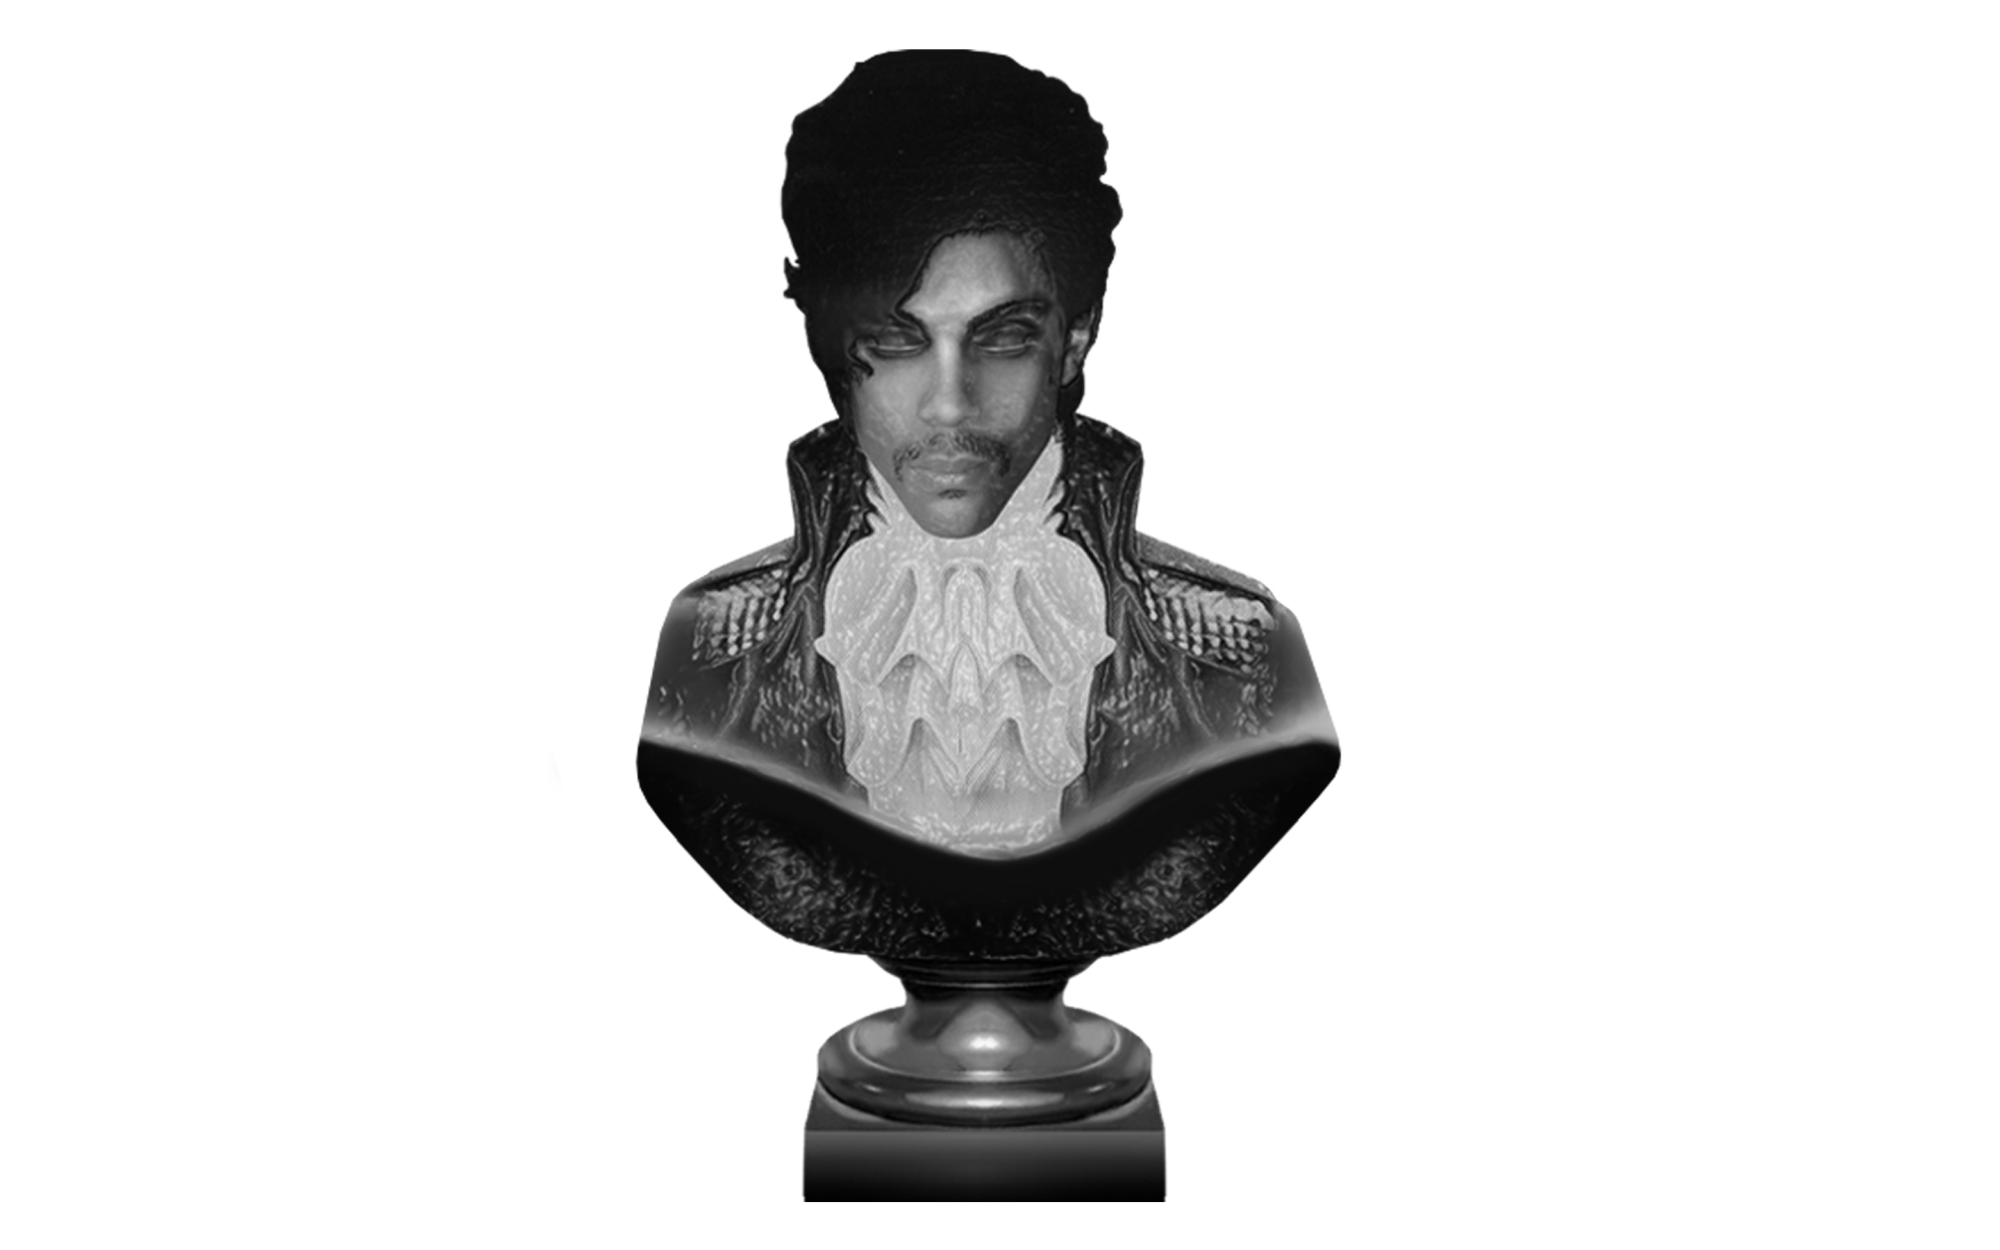 Prince Singer PNG Background Image